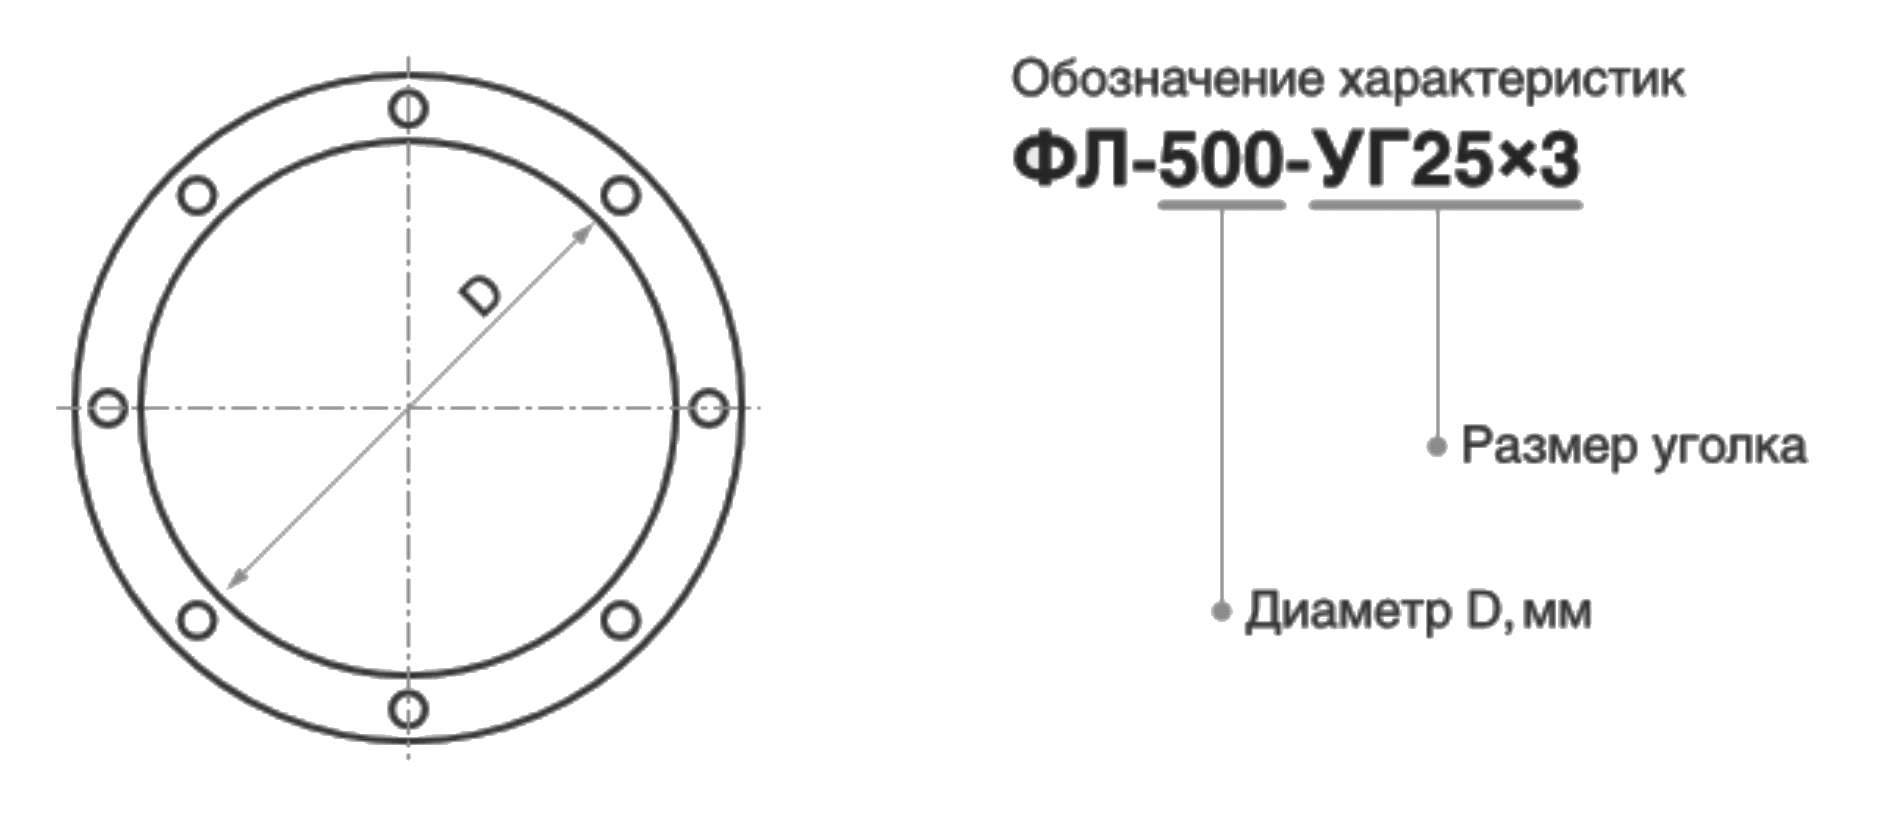  круглый, Детали систем вентиляции - Каталог, Аэро-97 .